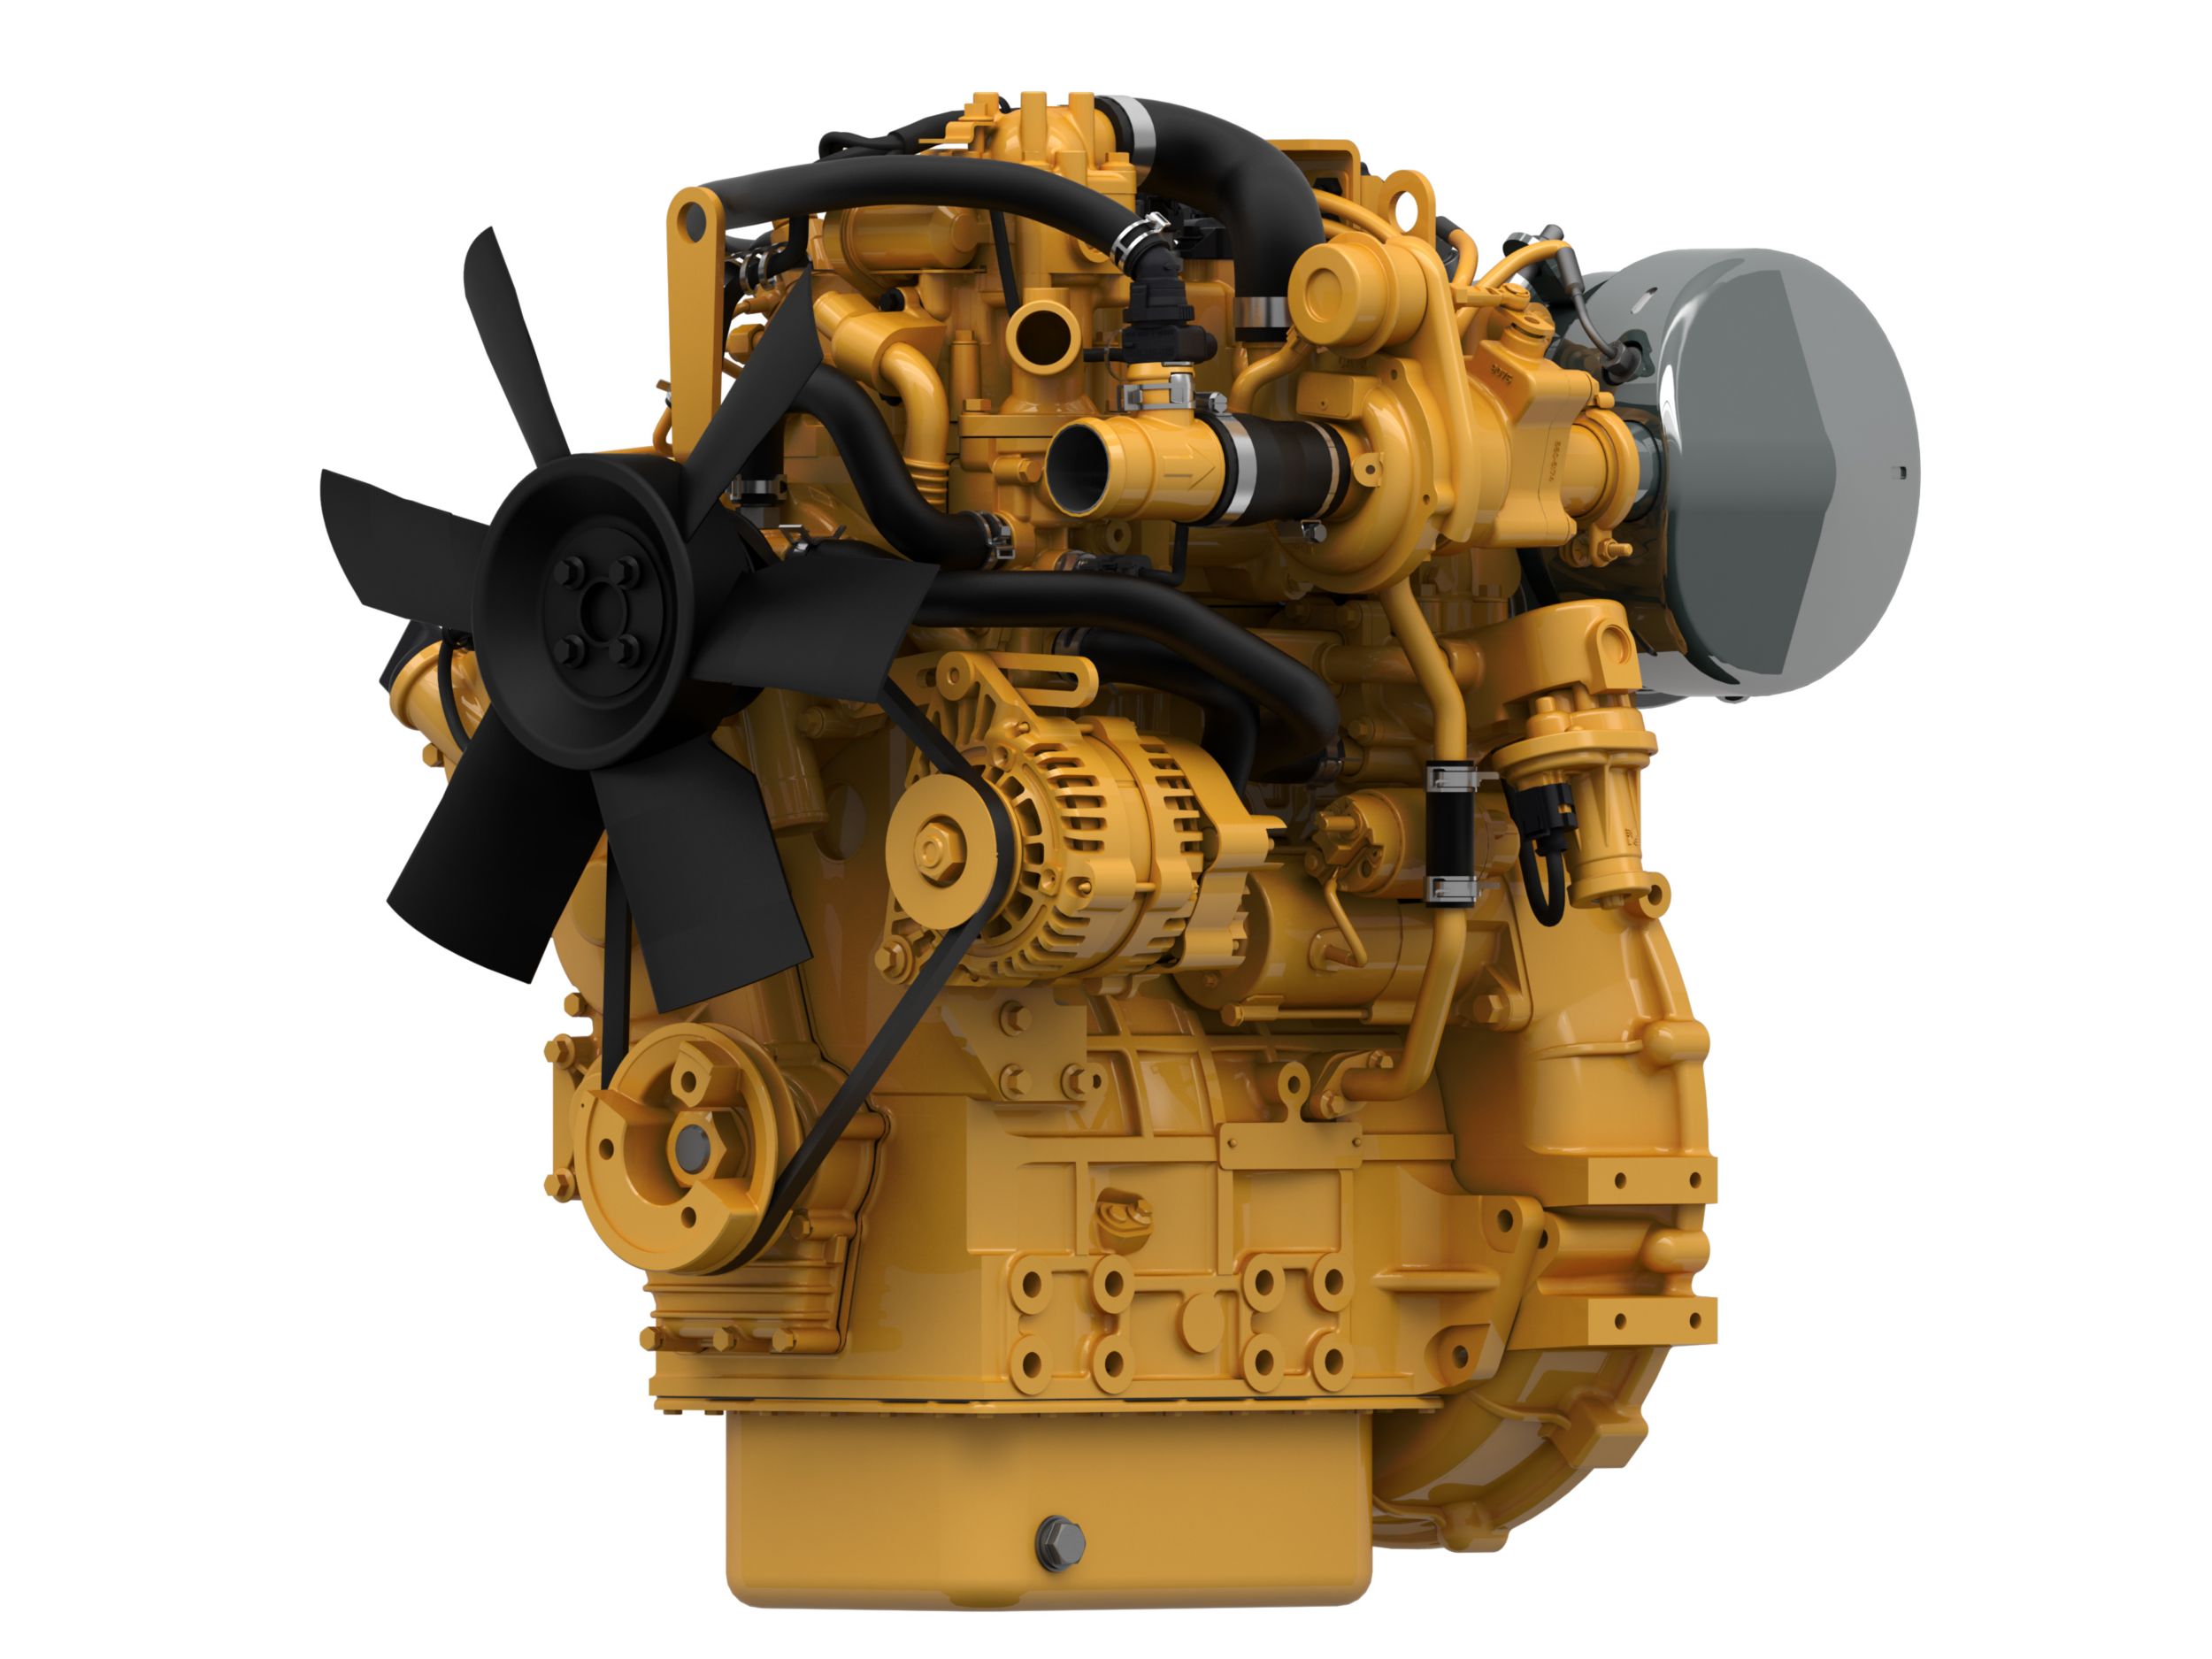 Motori diesel C1.7 EU Stage V, Tier 4